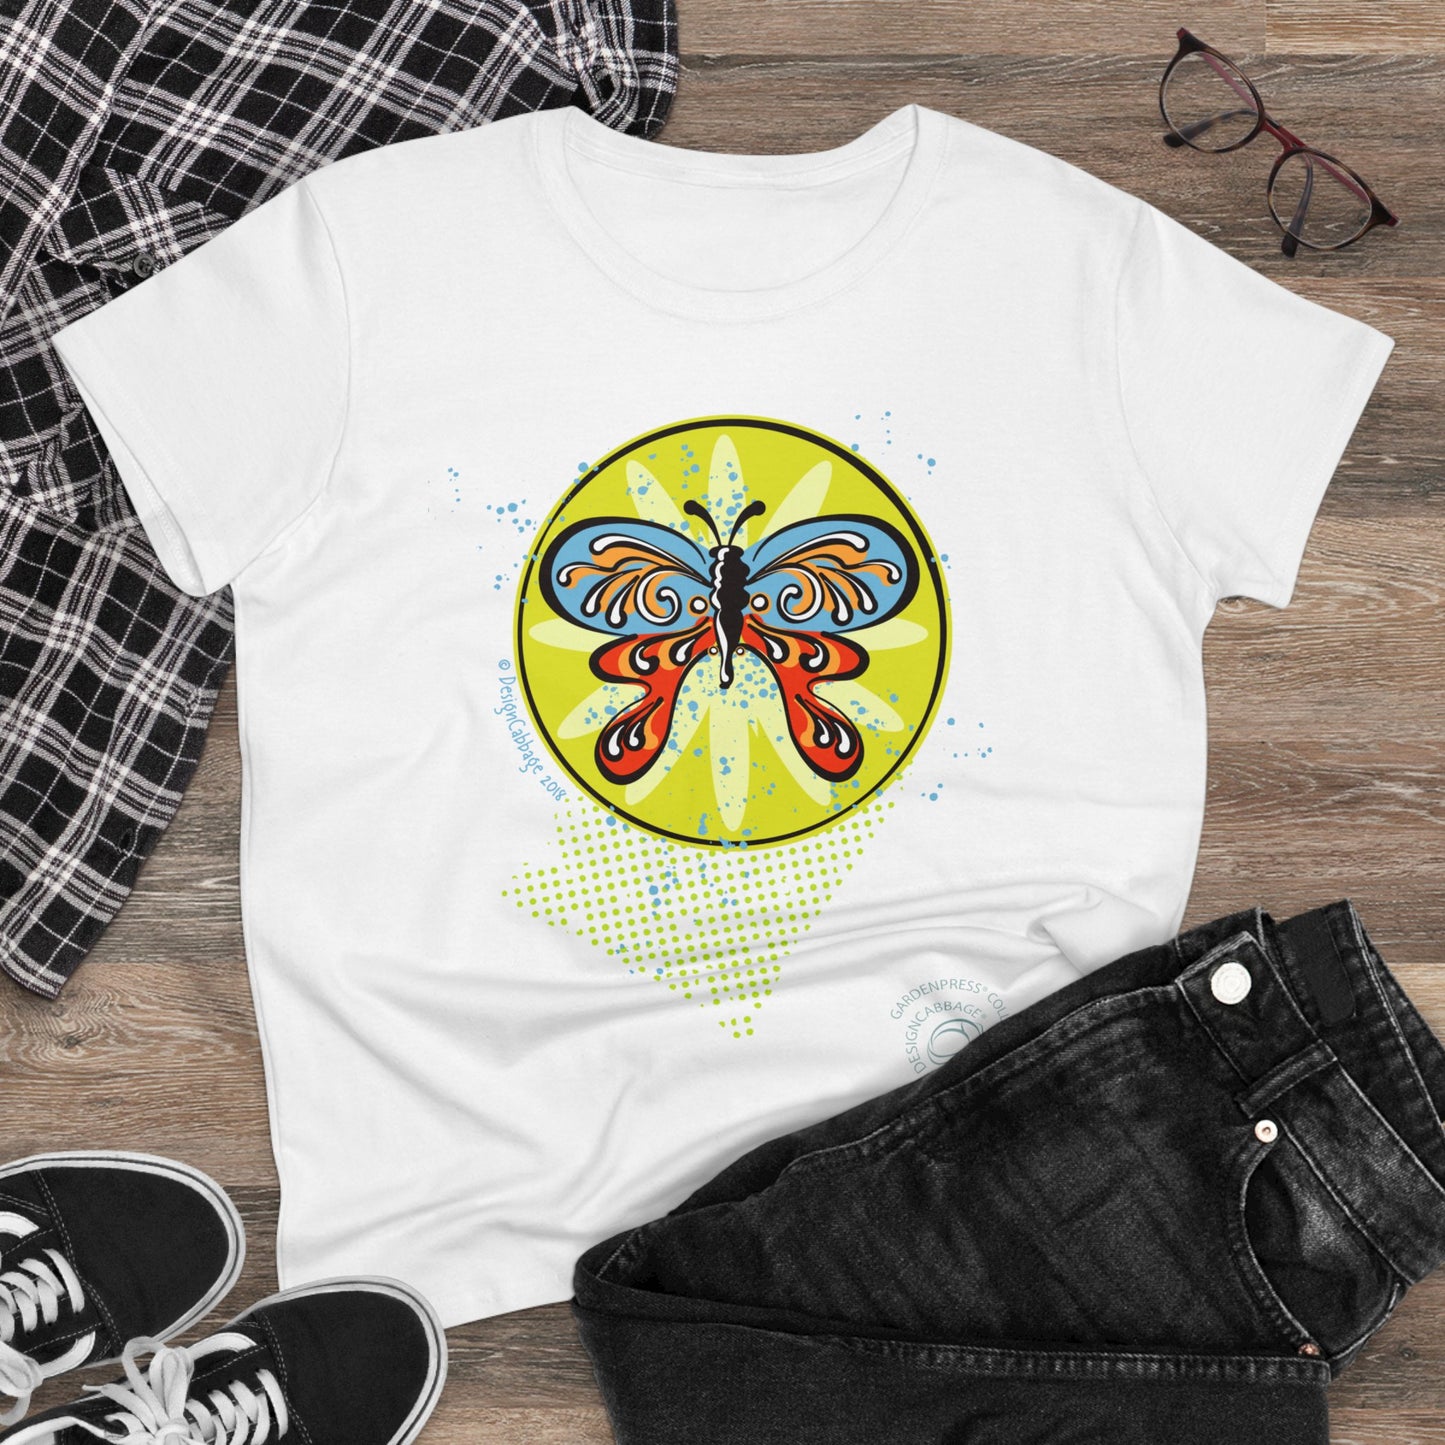 Butterfly Garden Graphic T-Shirt - GardenPress® Collection - Women's Tee